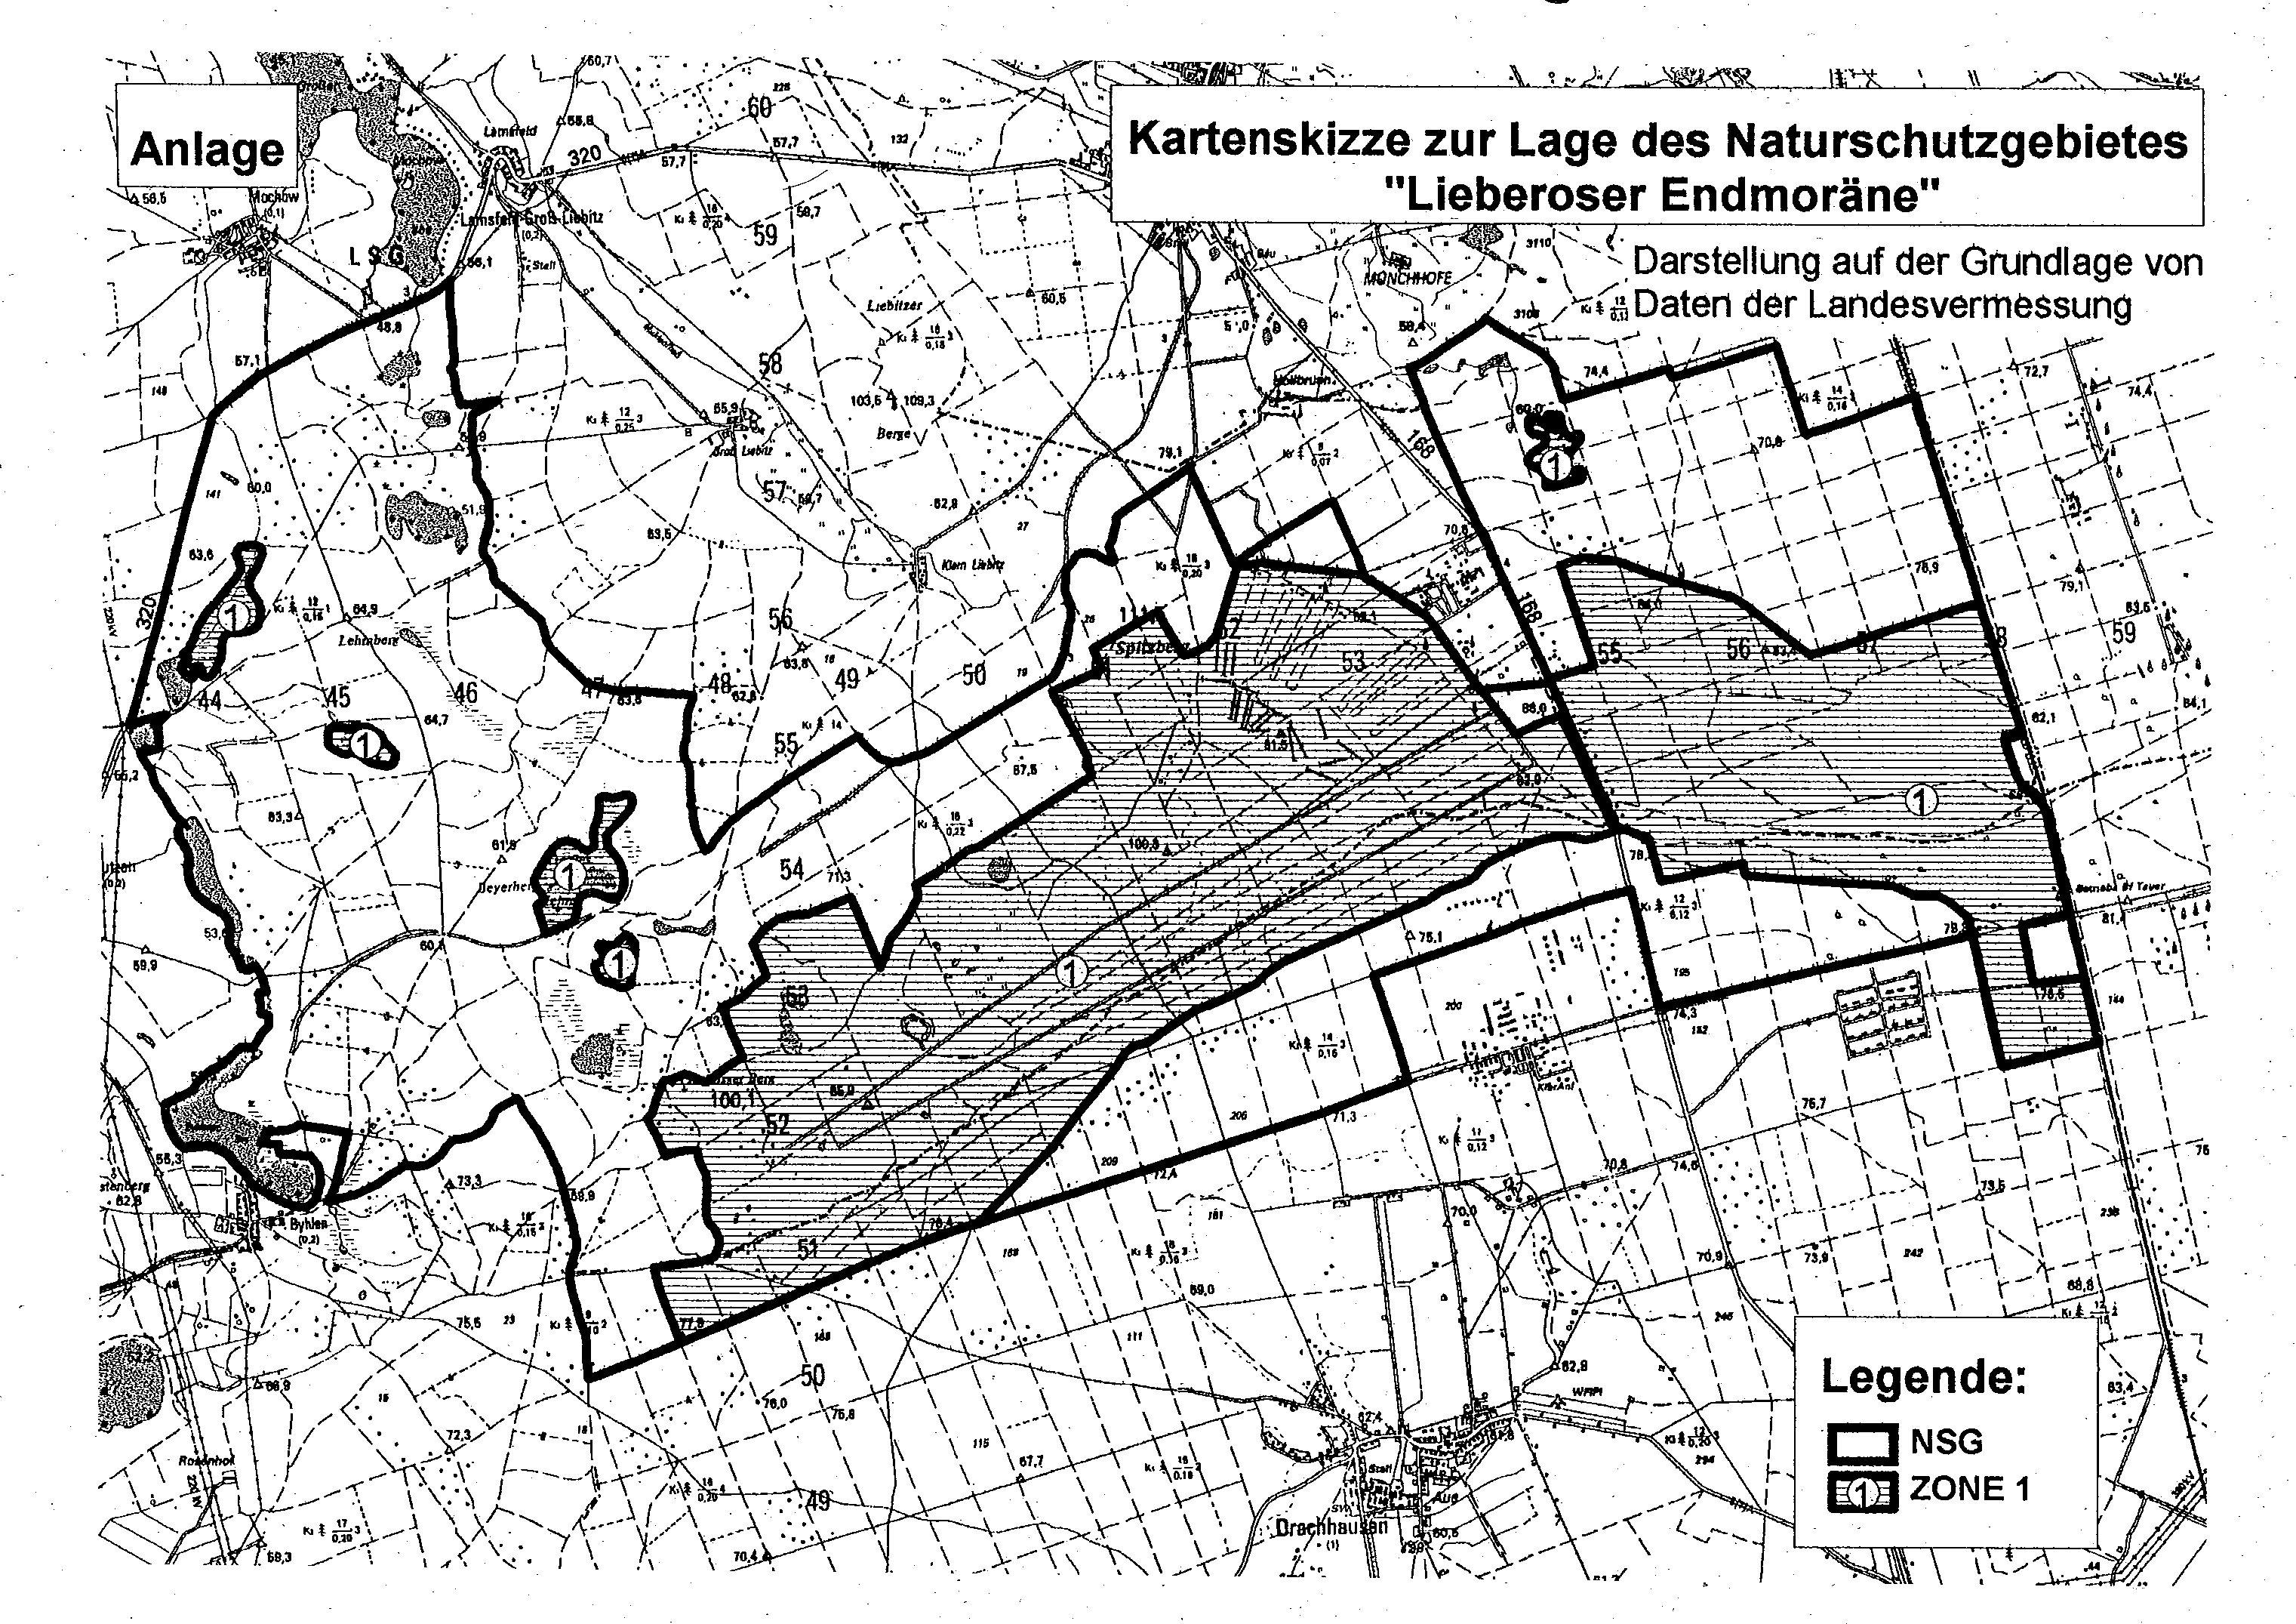 Kartenskizze zur Lage des Naturschutzgebietes "Lieberoser Endmoräne"